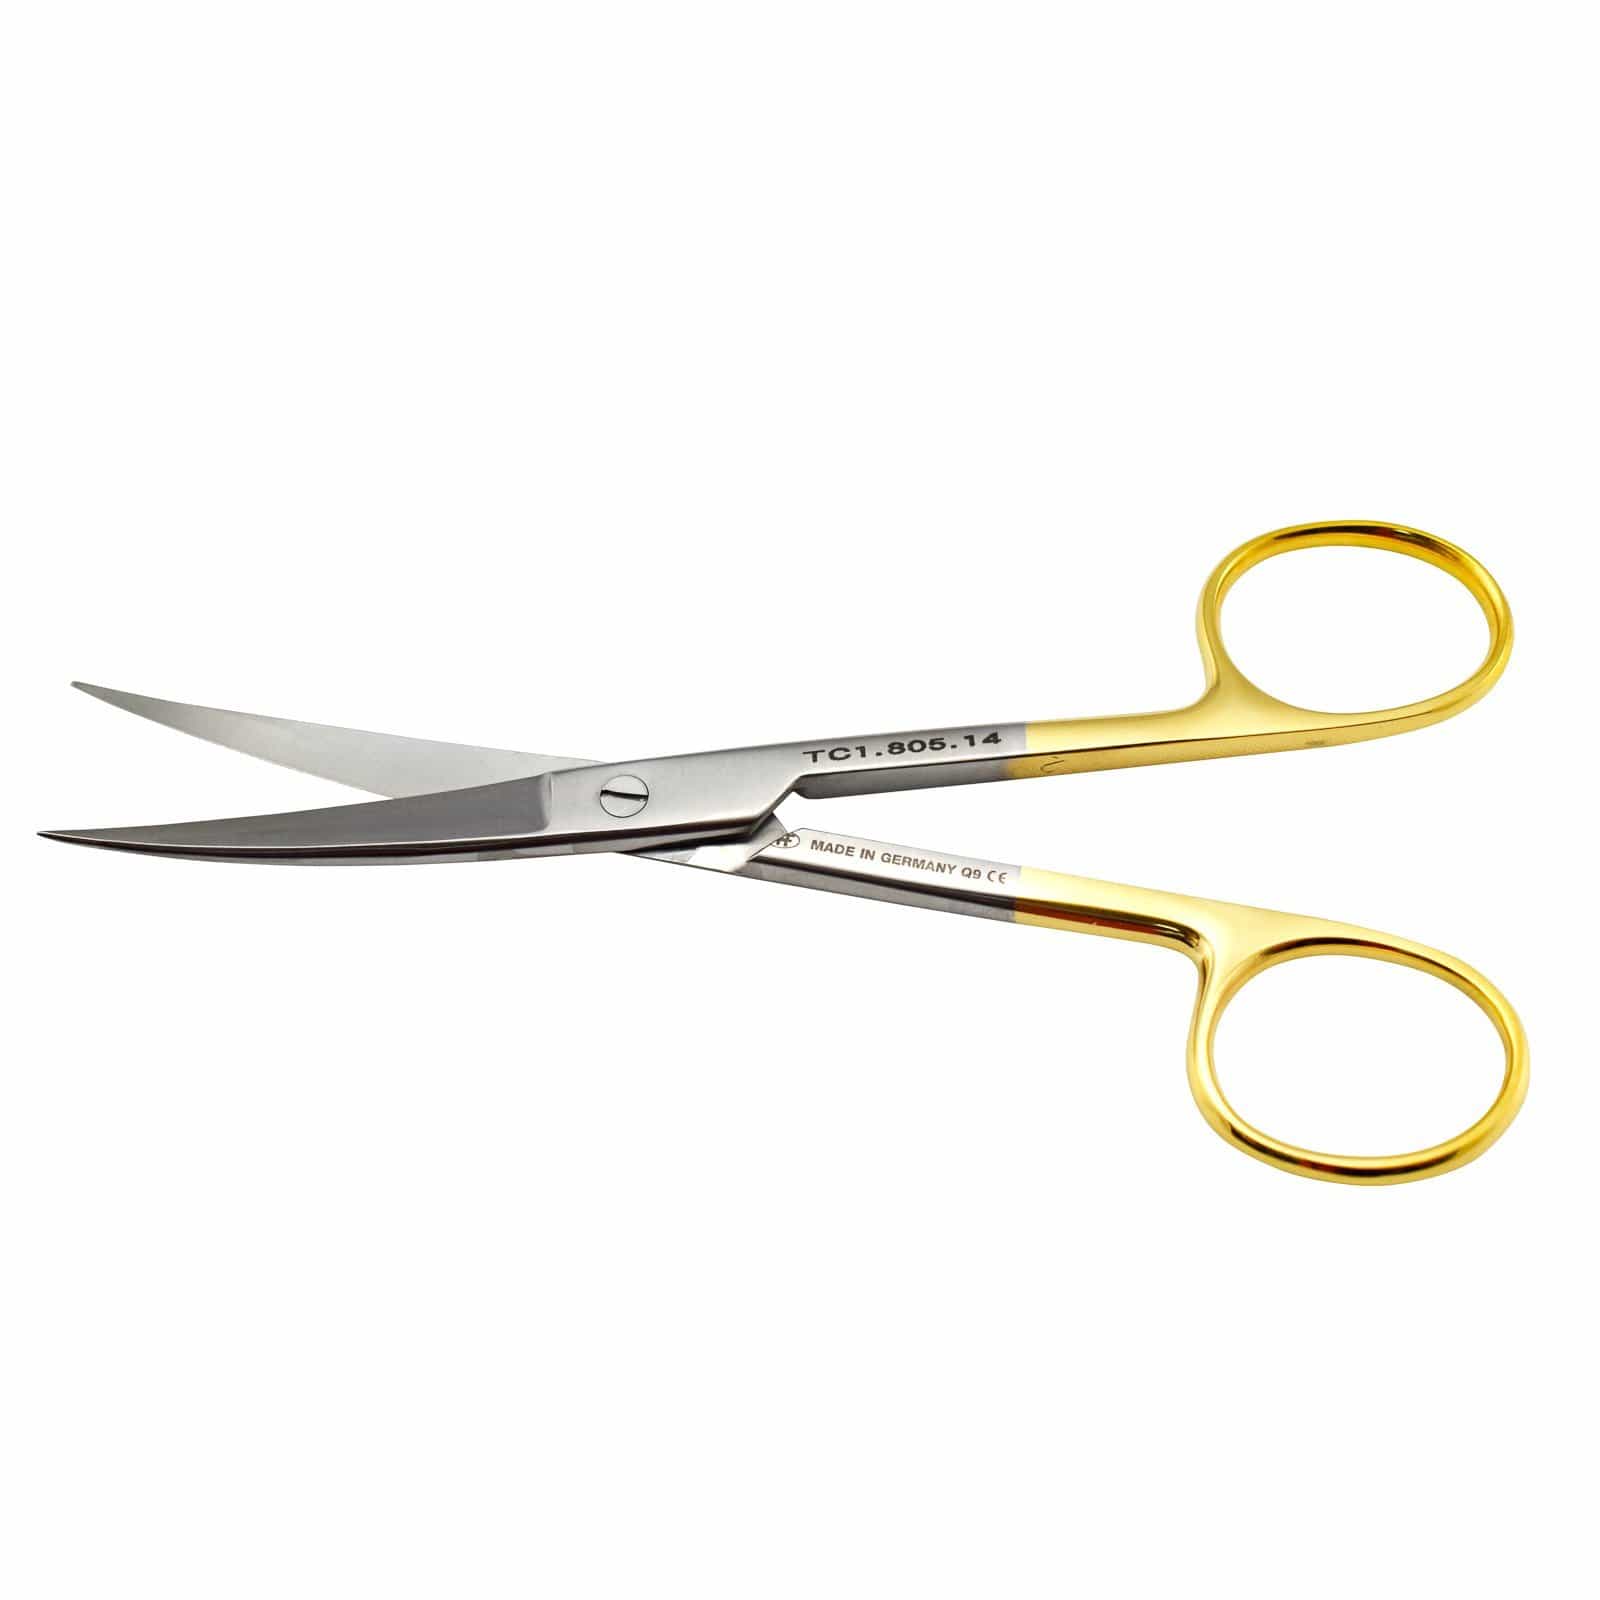 Hipp Surgical Instruments Hipp Surgical Scissors